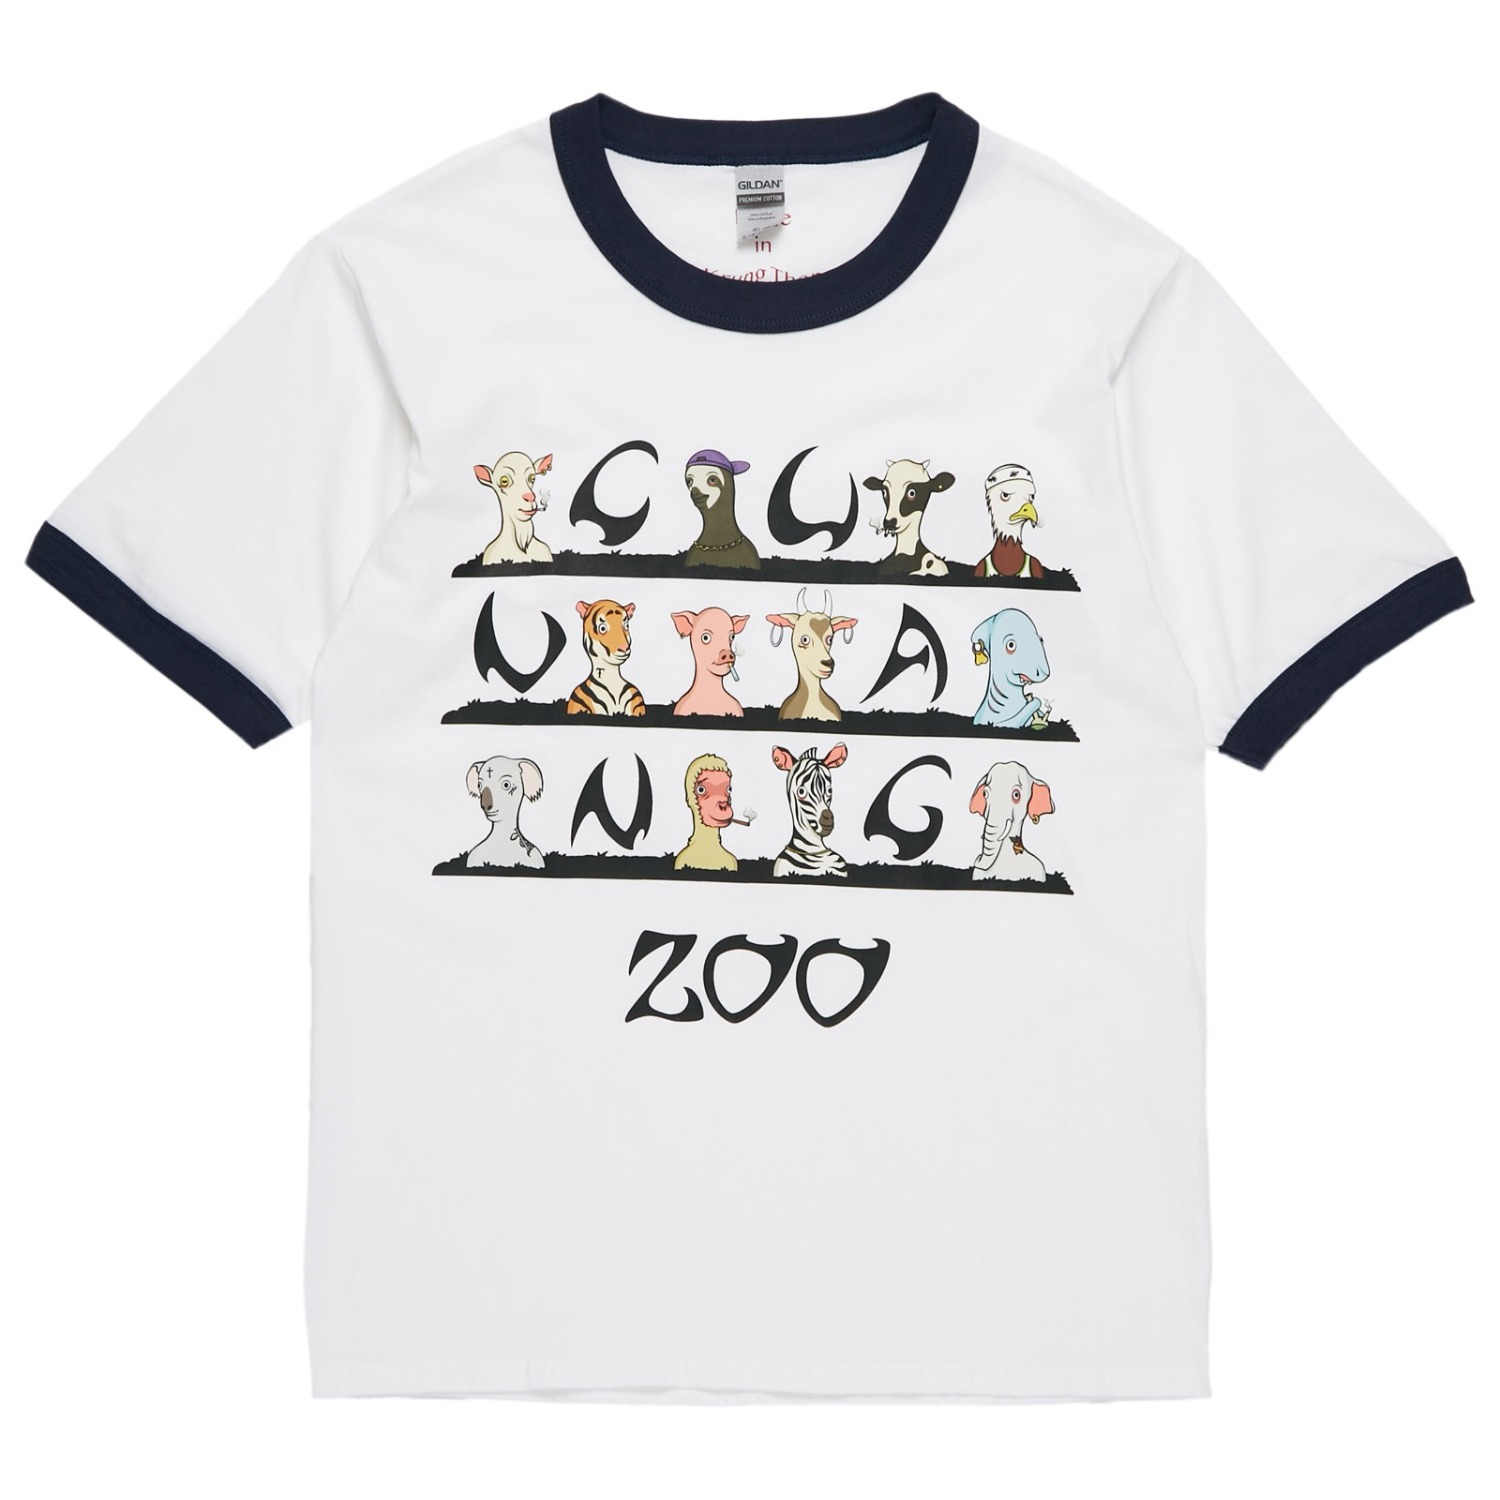 Wild zoo T-shirt